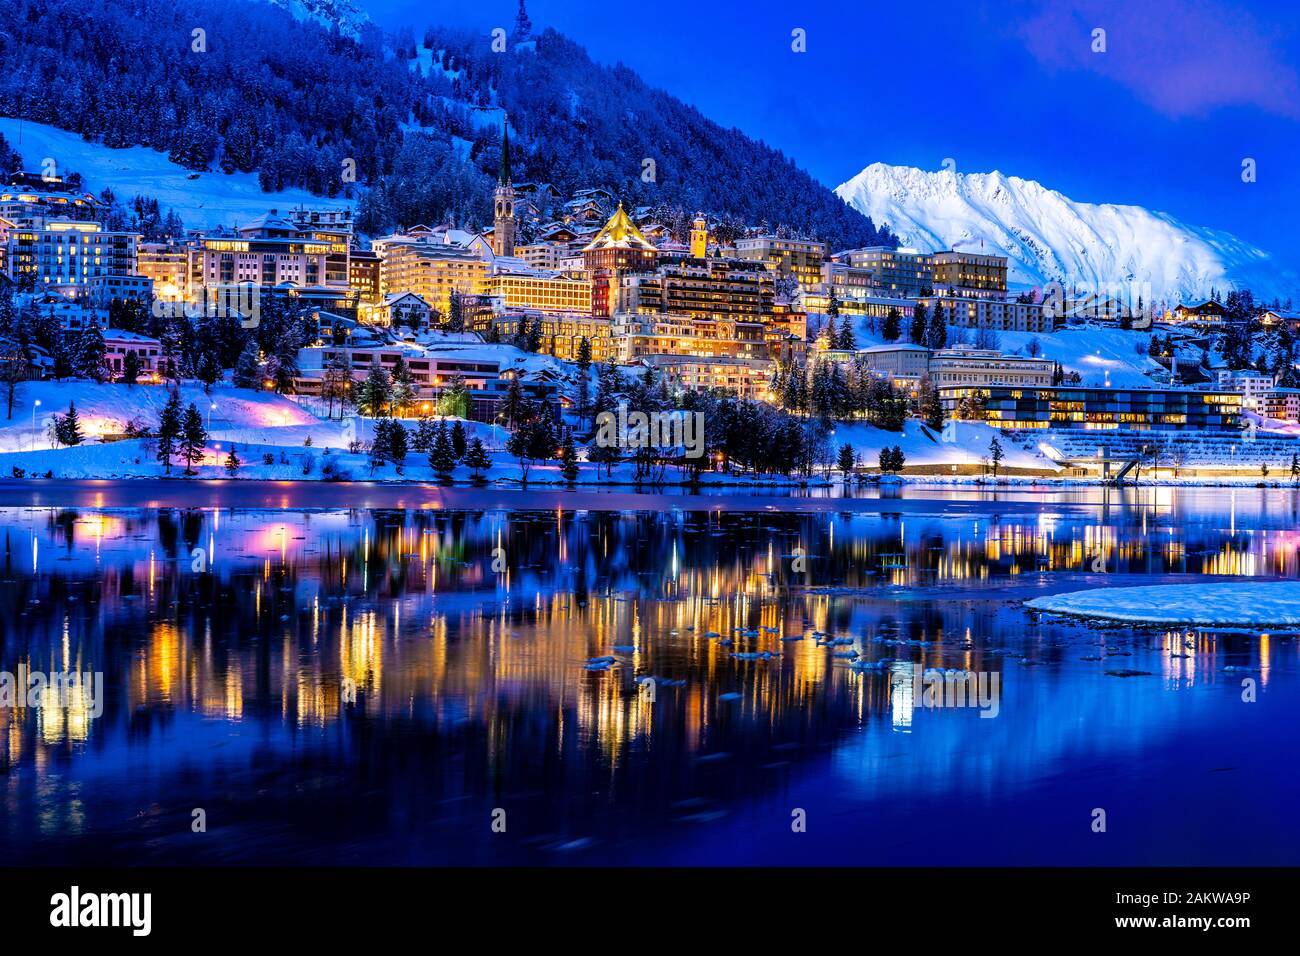 Vue de belles lumières nocturnes de Saint-Moritz en Suisse la nuit, avec réflexion du lac et des montagnes de neige dans l'arrière-plan Banque D'Images